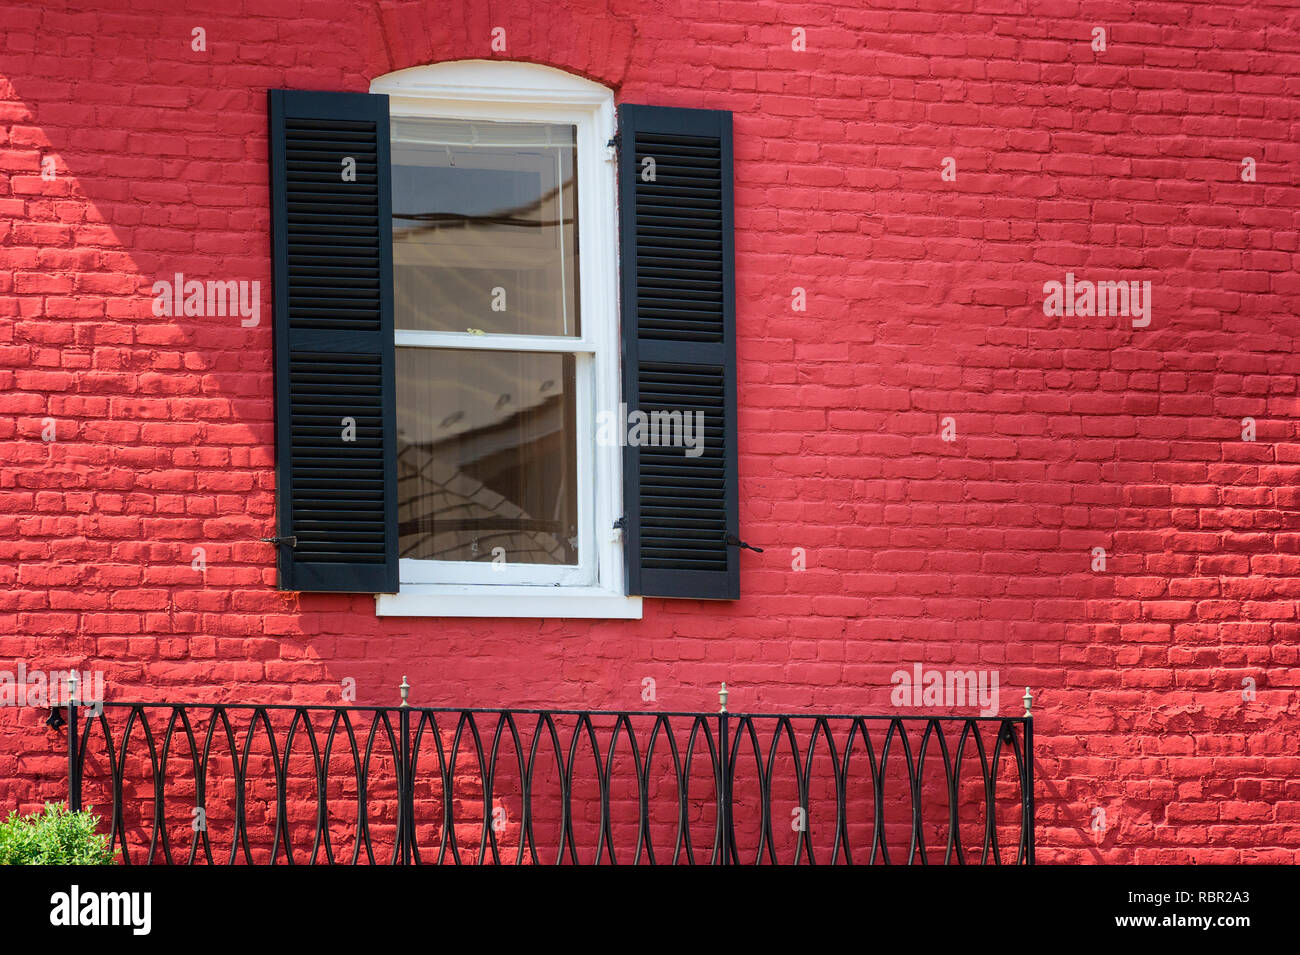 Un côté extérieur d'un bâtiment en brique rouge avec une fenêtre en fer forgé, encadrées de volets noir Banque D'Images